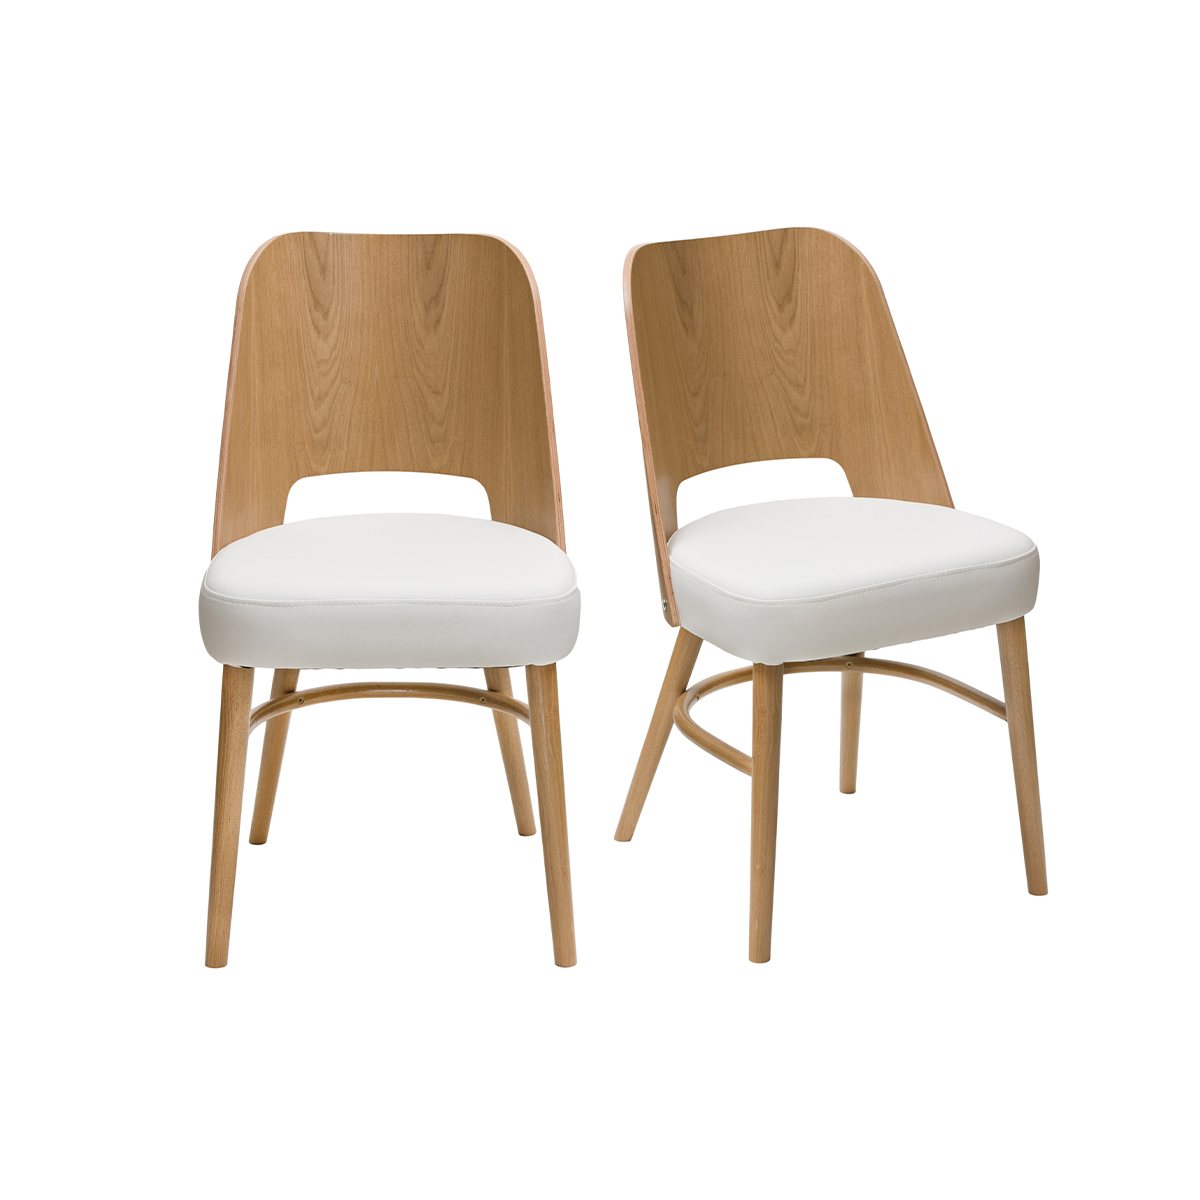 Chaises bois chêne et assises blanches (lot de 2) EDITO vue1